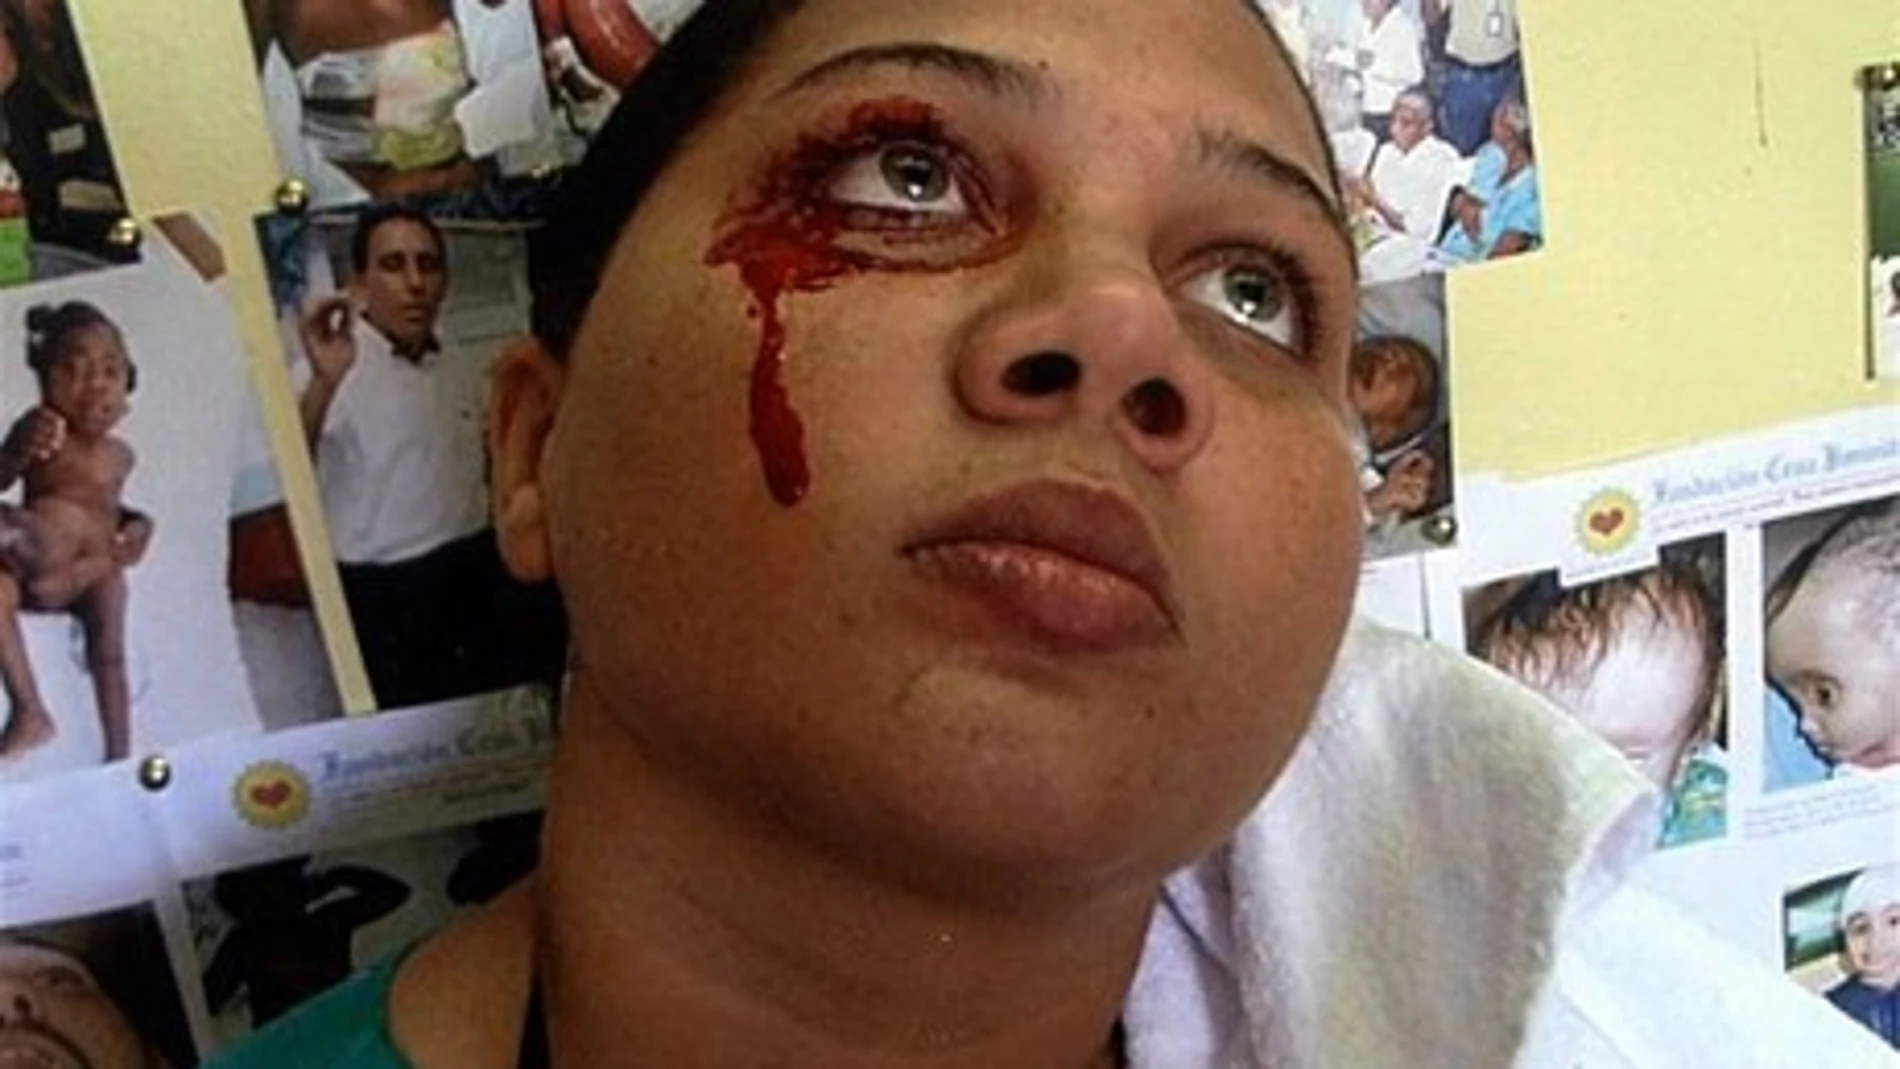 La joven que llora sangre (Foto: listindiario.com)